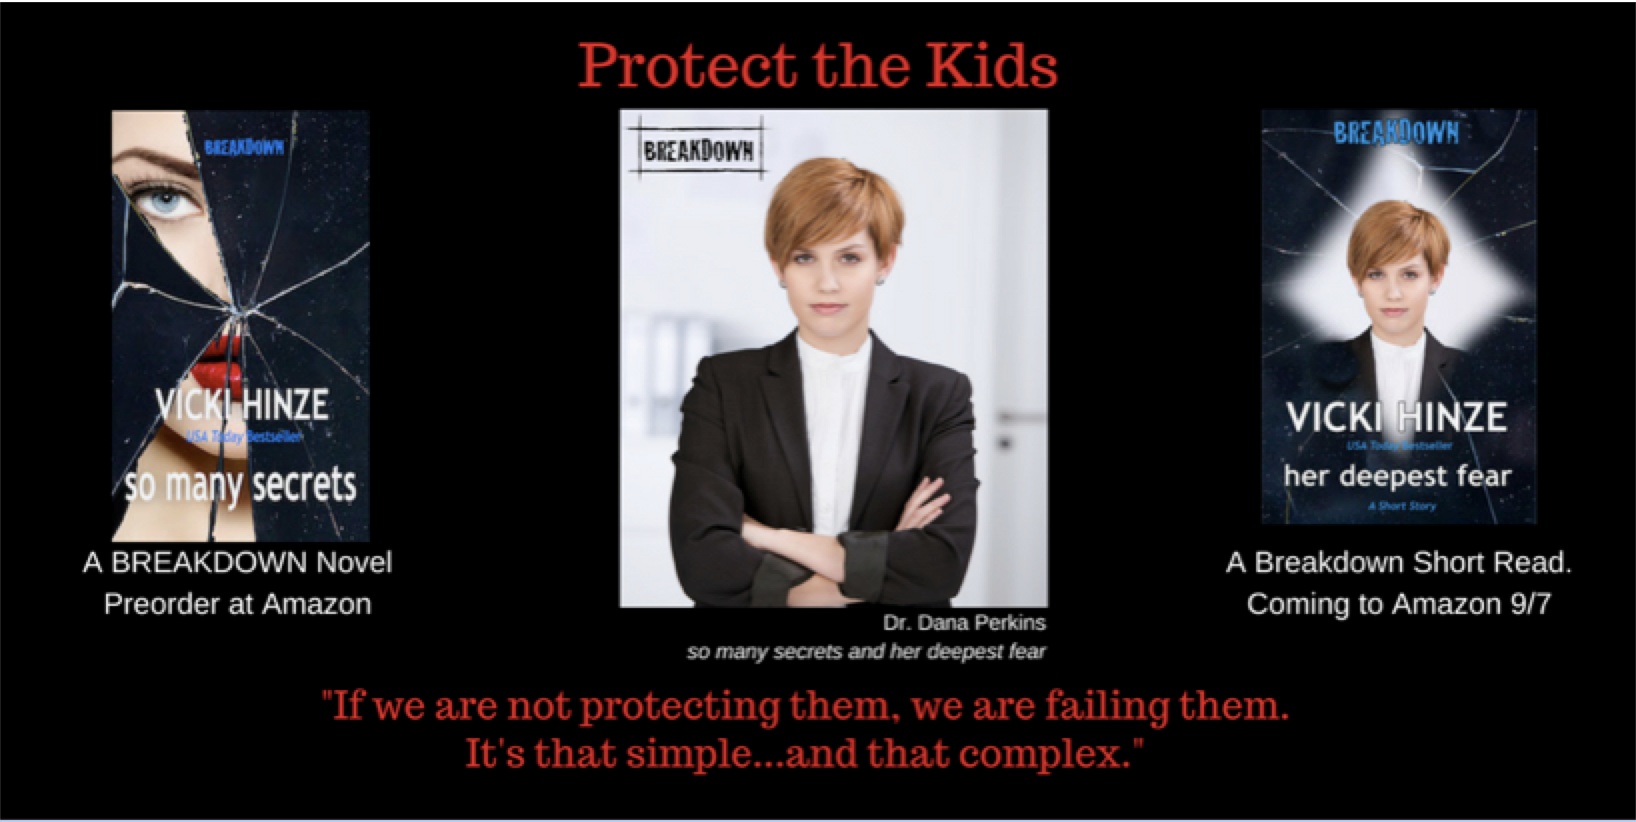 Vicki Hinze, Protect the Kids, Breakdown